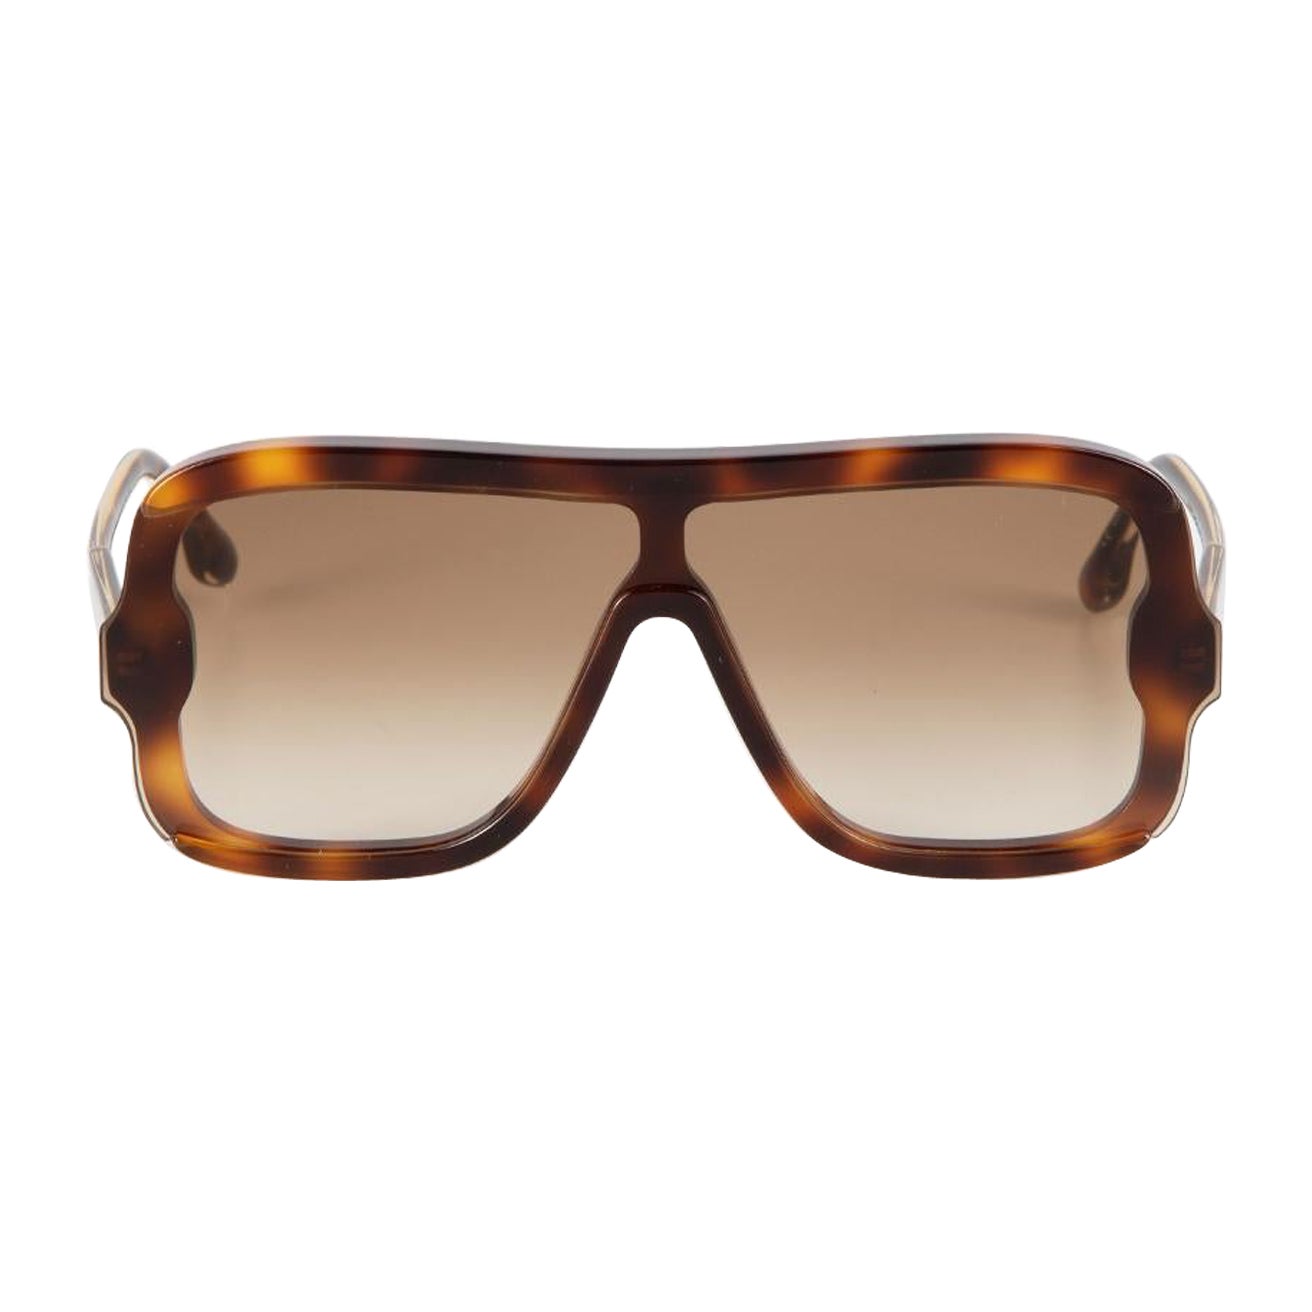 Victoria Beckham Brown Tortoiseshell Shield Sunglasses For Sale